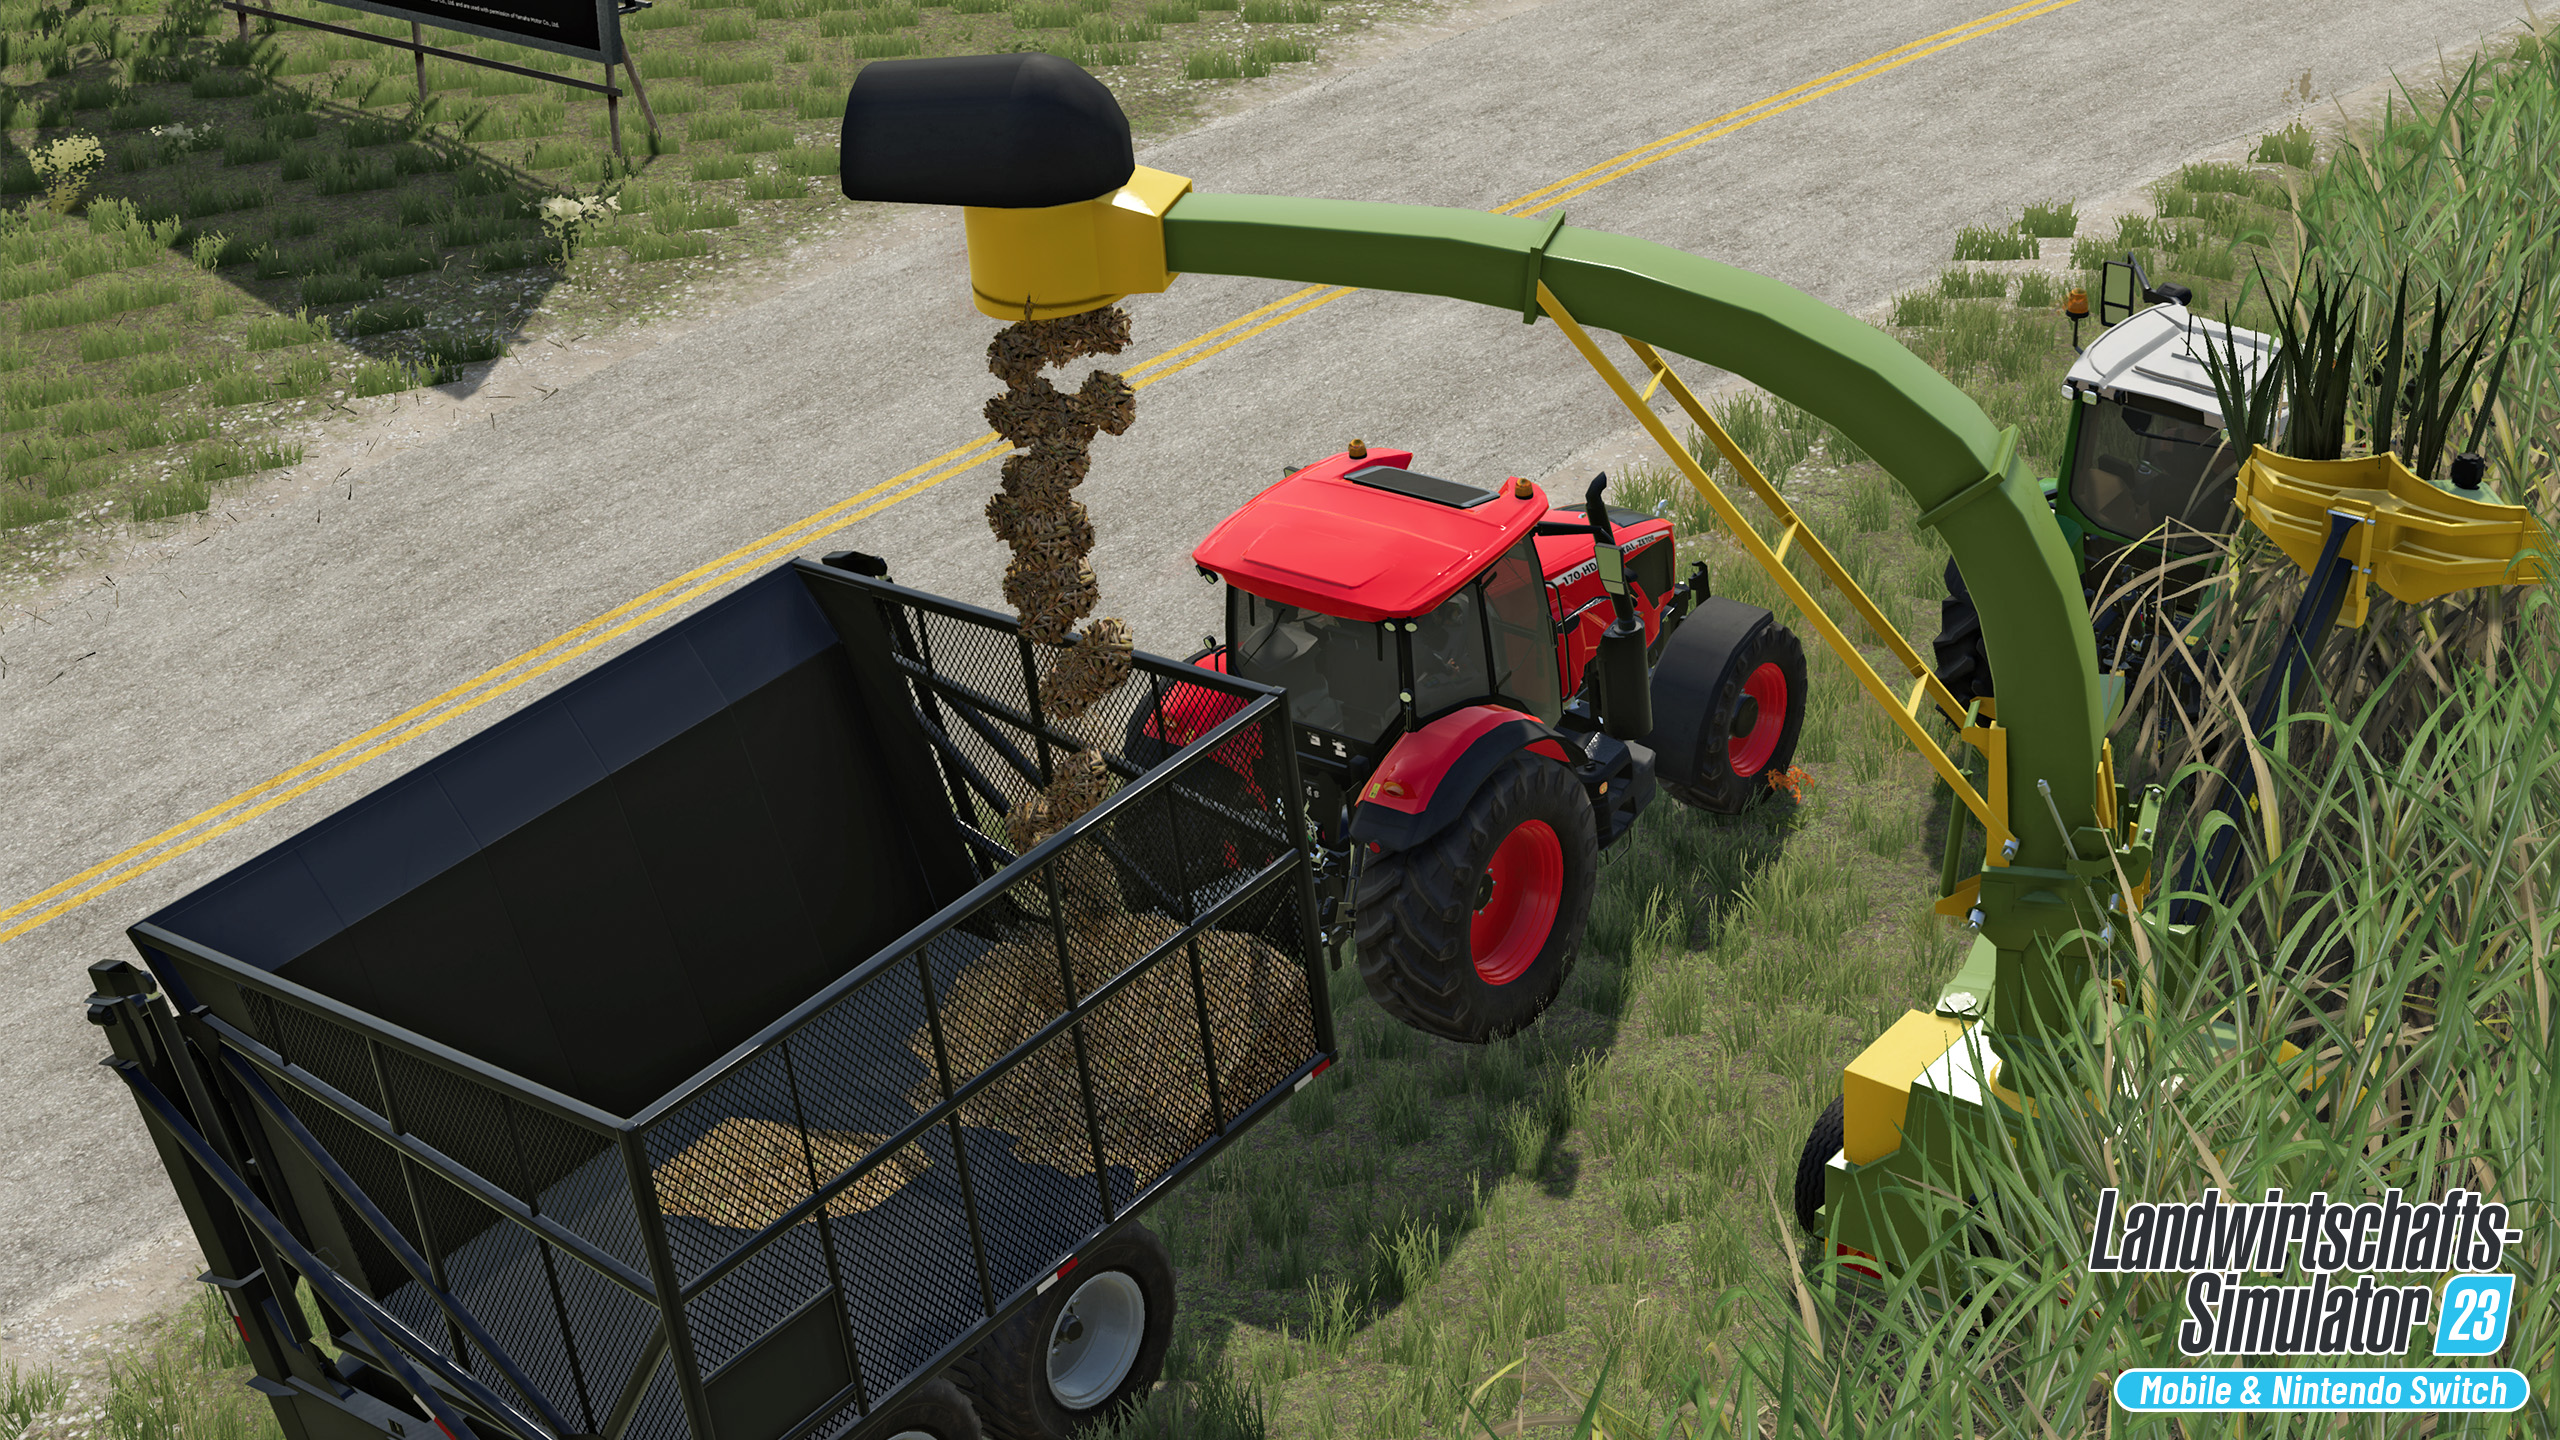 Landwirtschafts-Simulator 23: Kostenloses Content Update #2